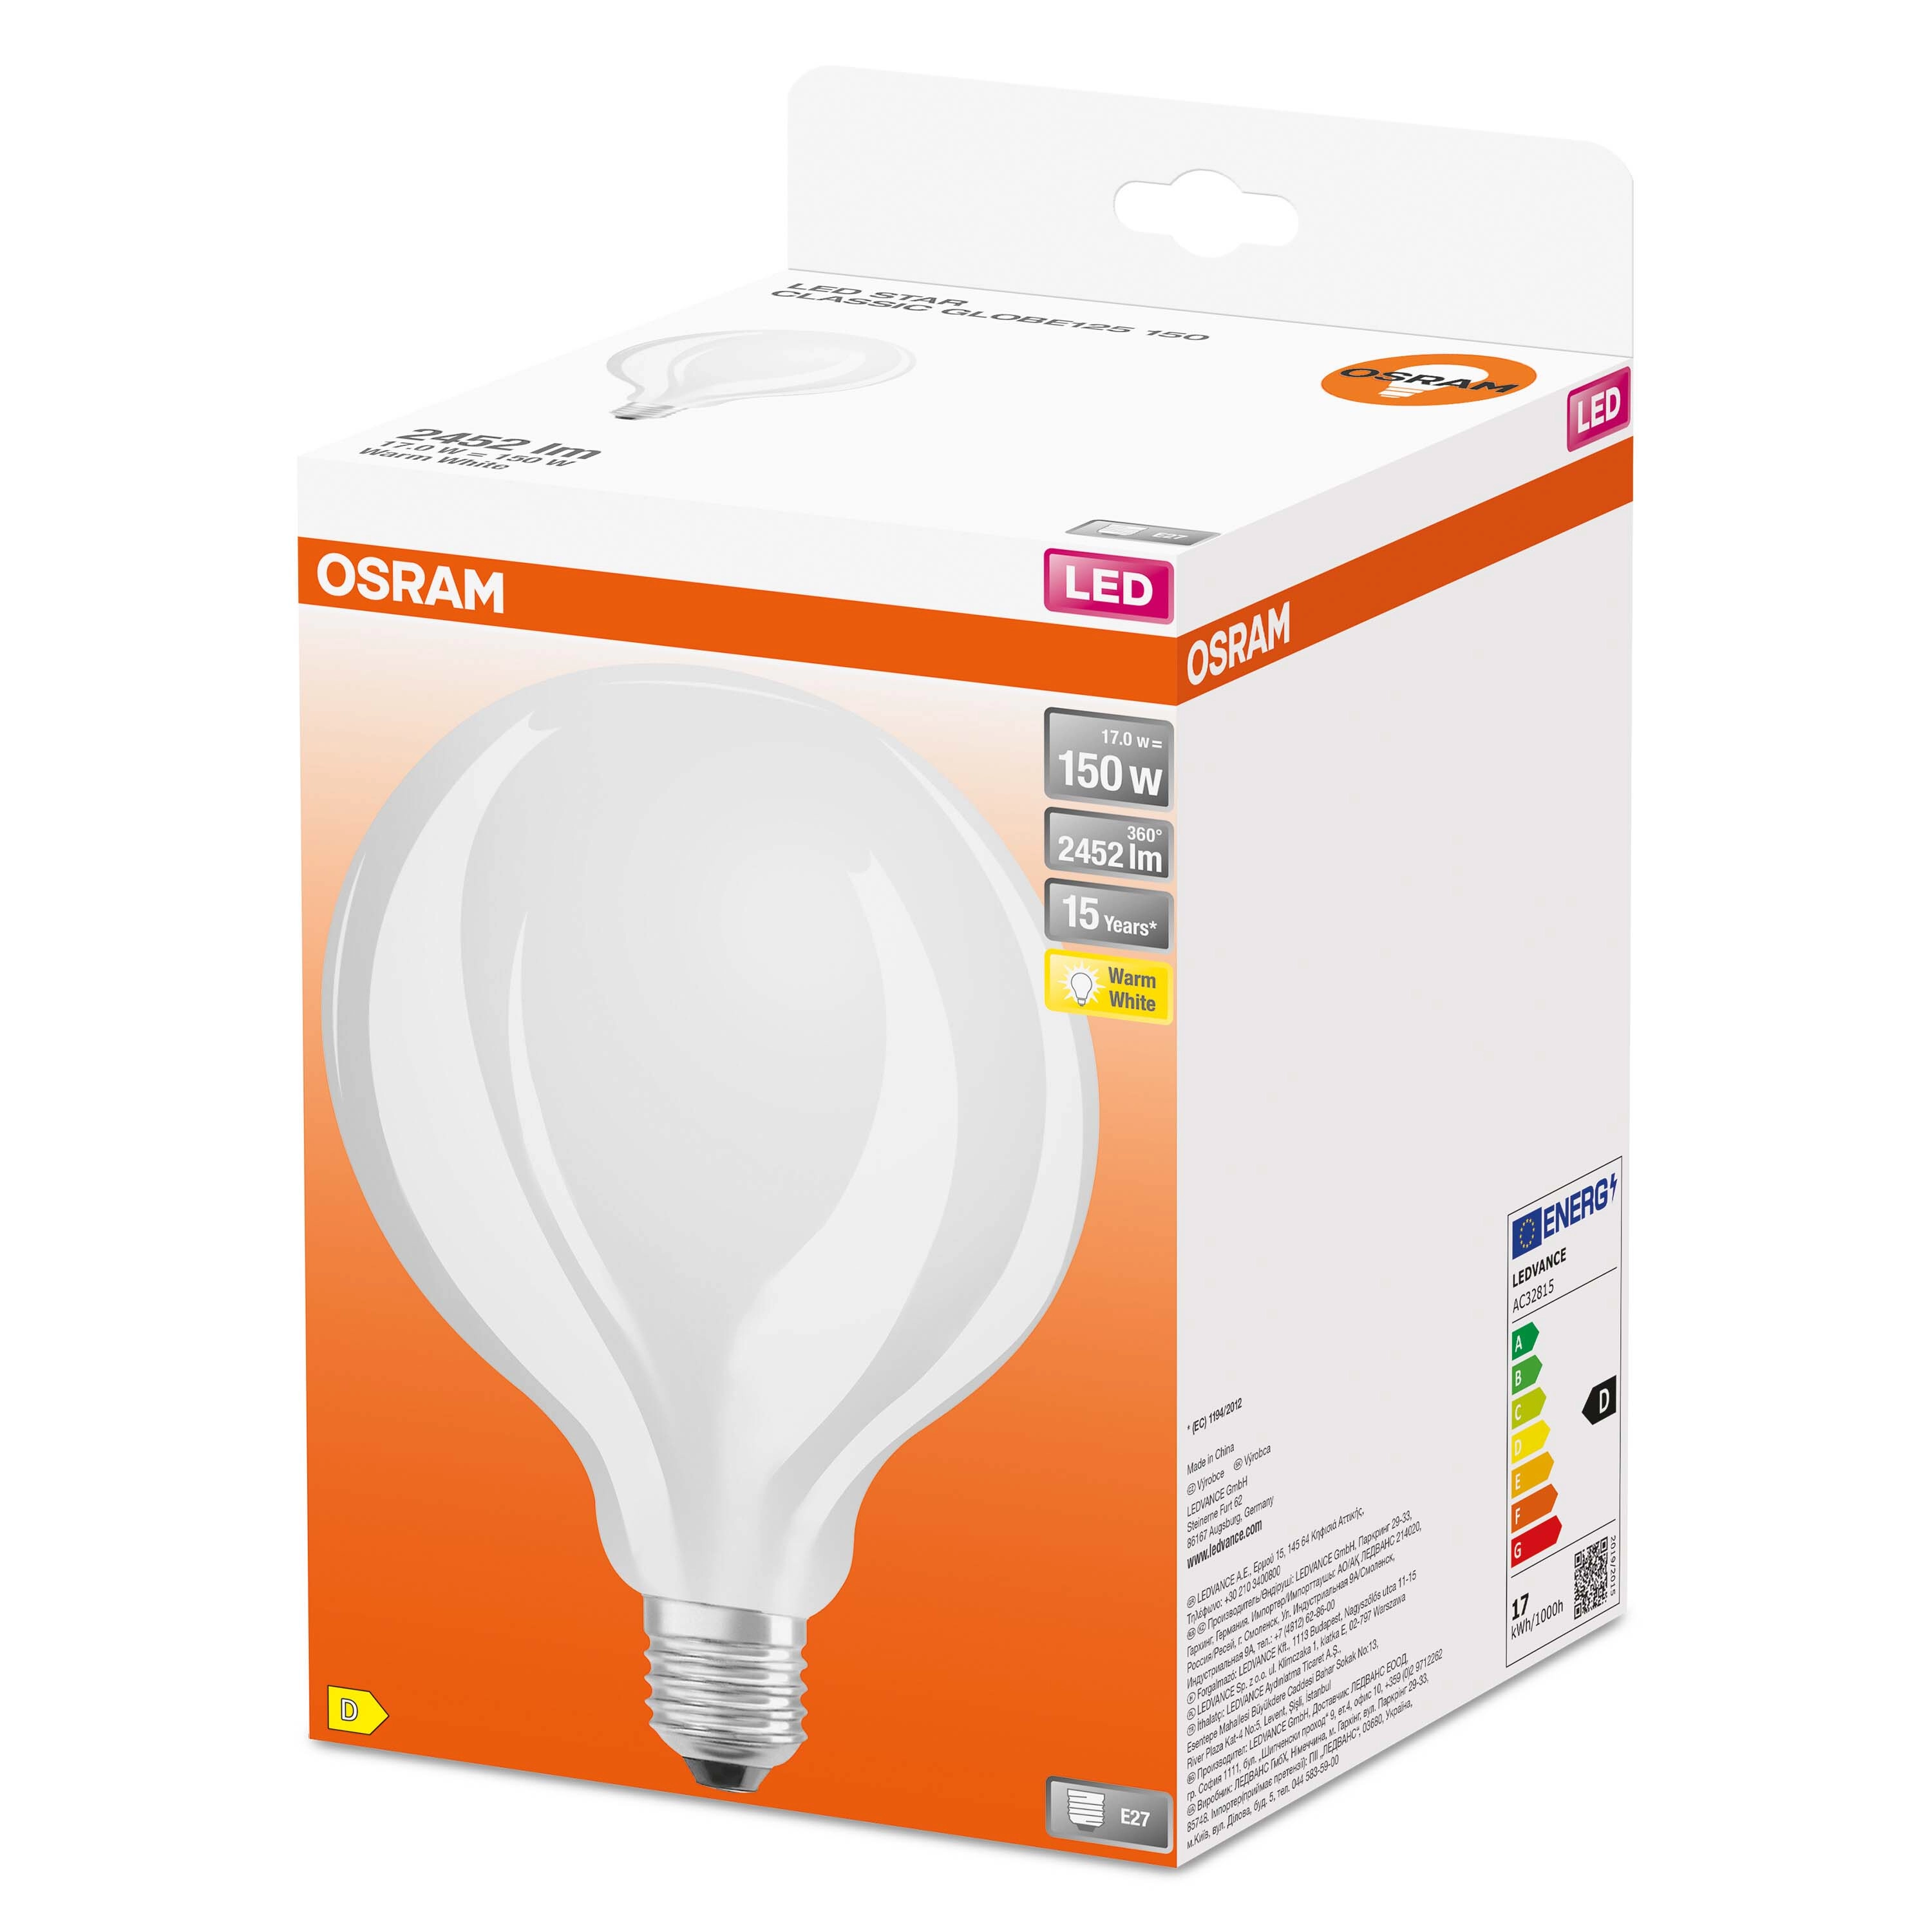 Lampadina LED a filamento smerigliata globo Osram 150 W 2700 K E27 2452 lm